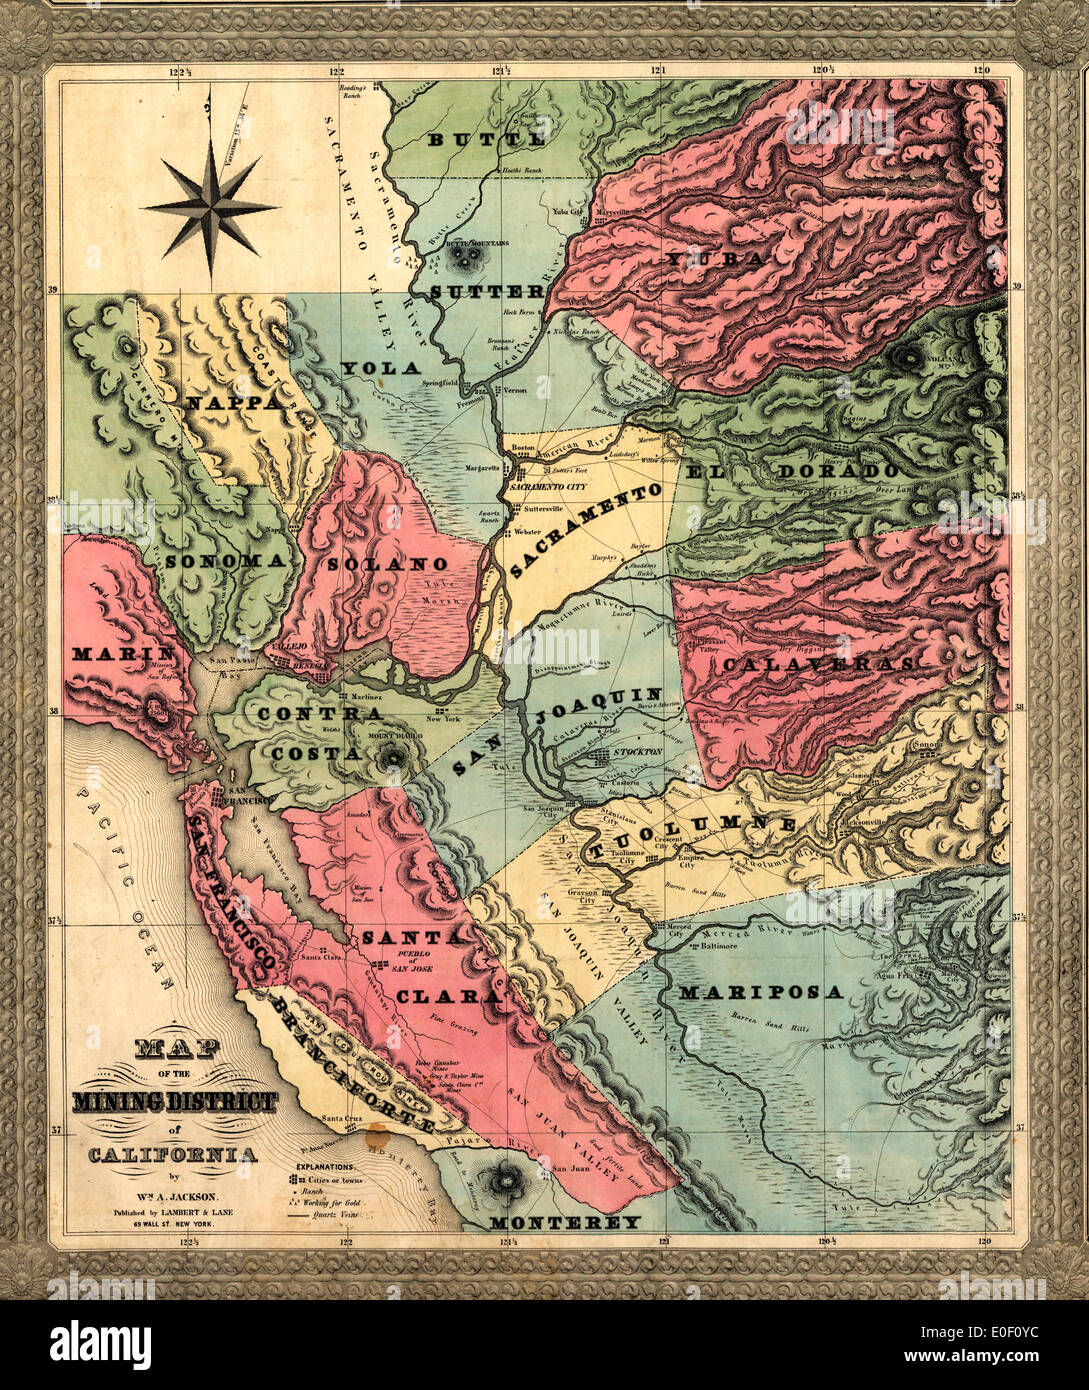 Mapa del distrito minero de California. 1851 Foto de stock